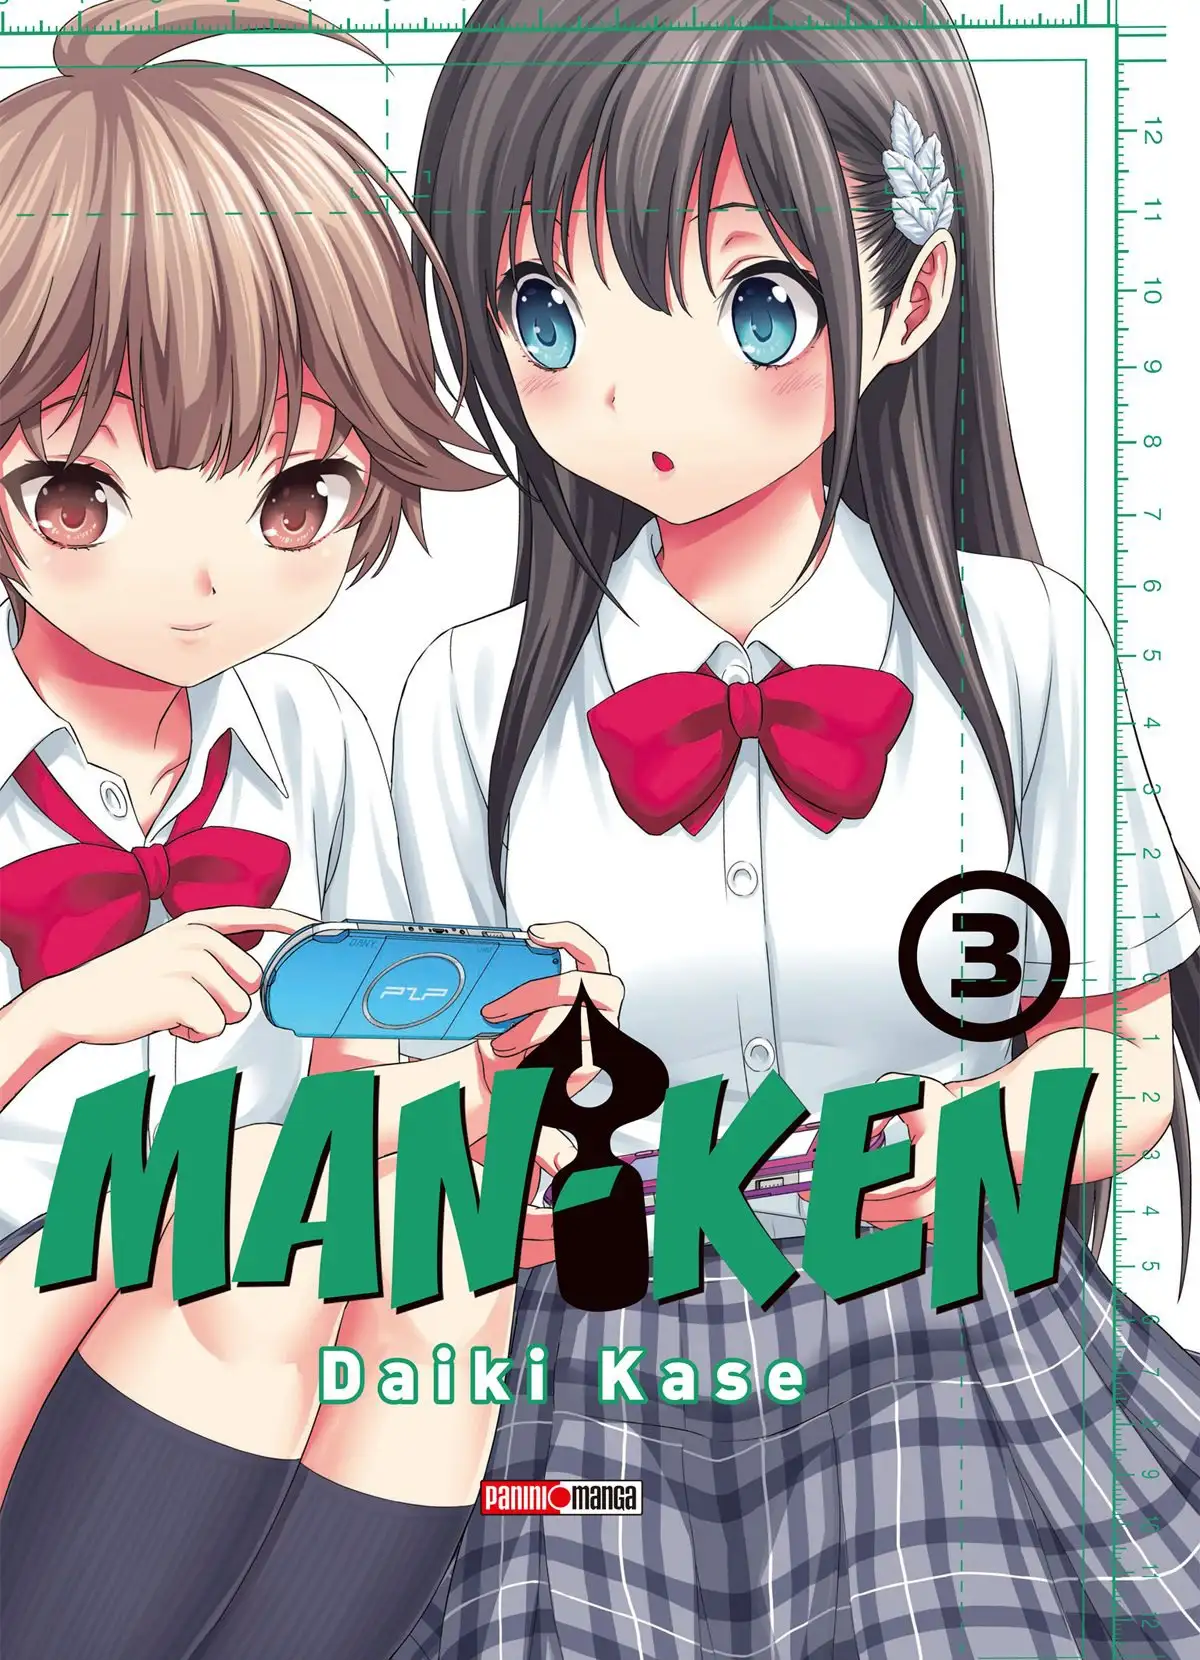 Man-Ken Volume 3 page 1